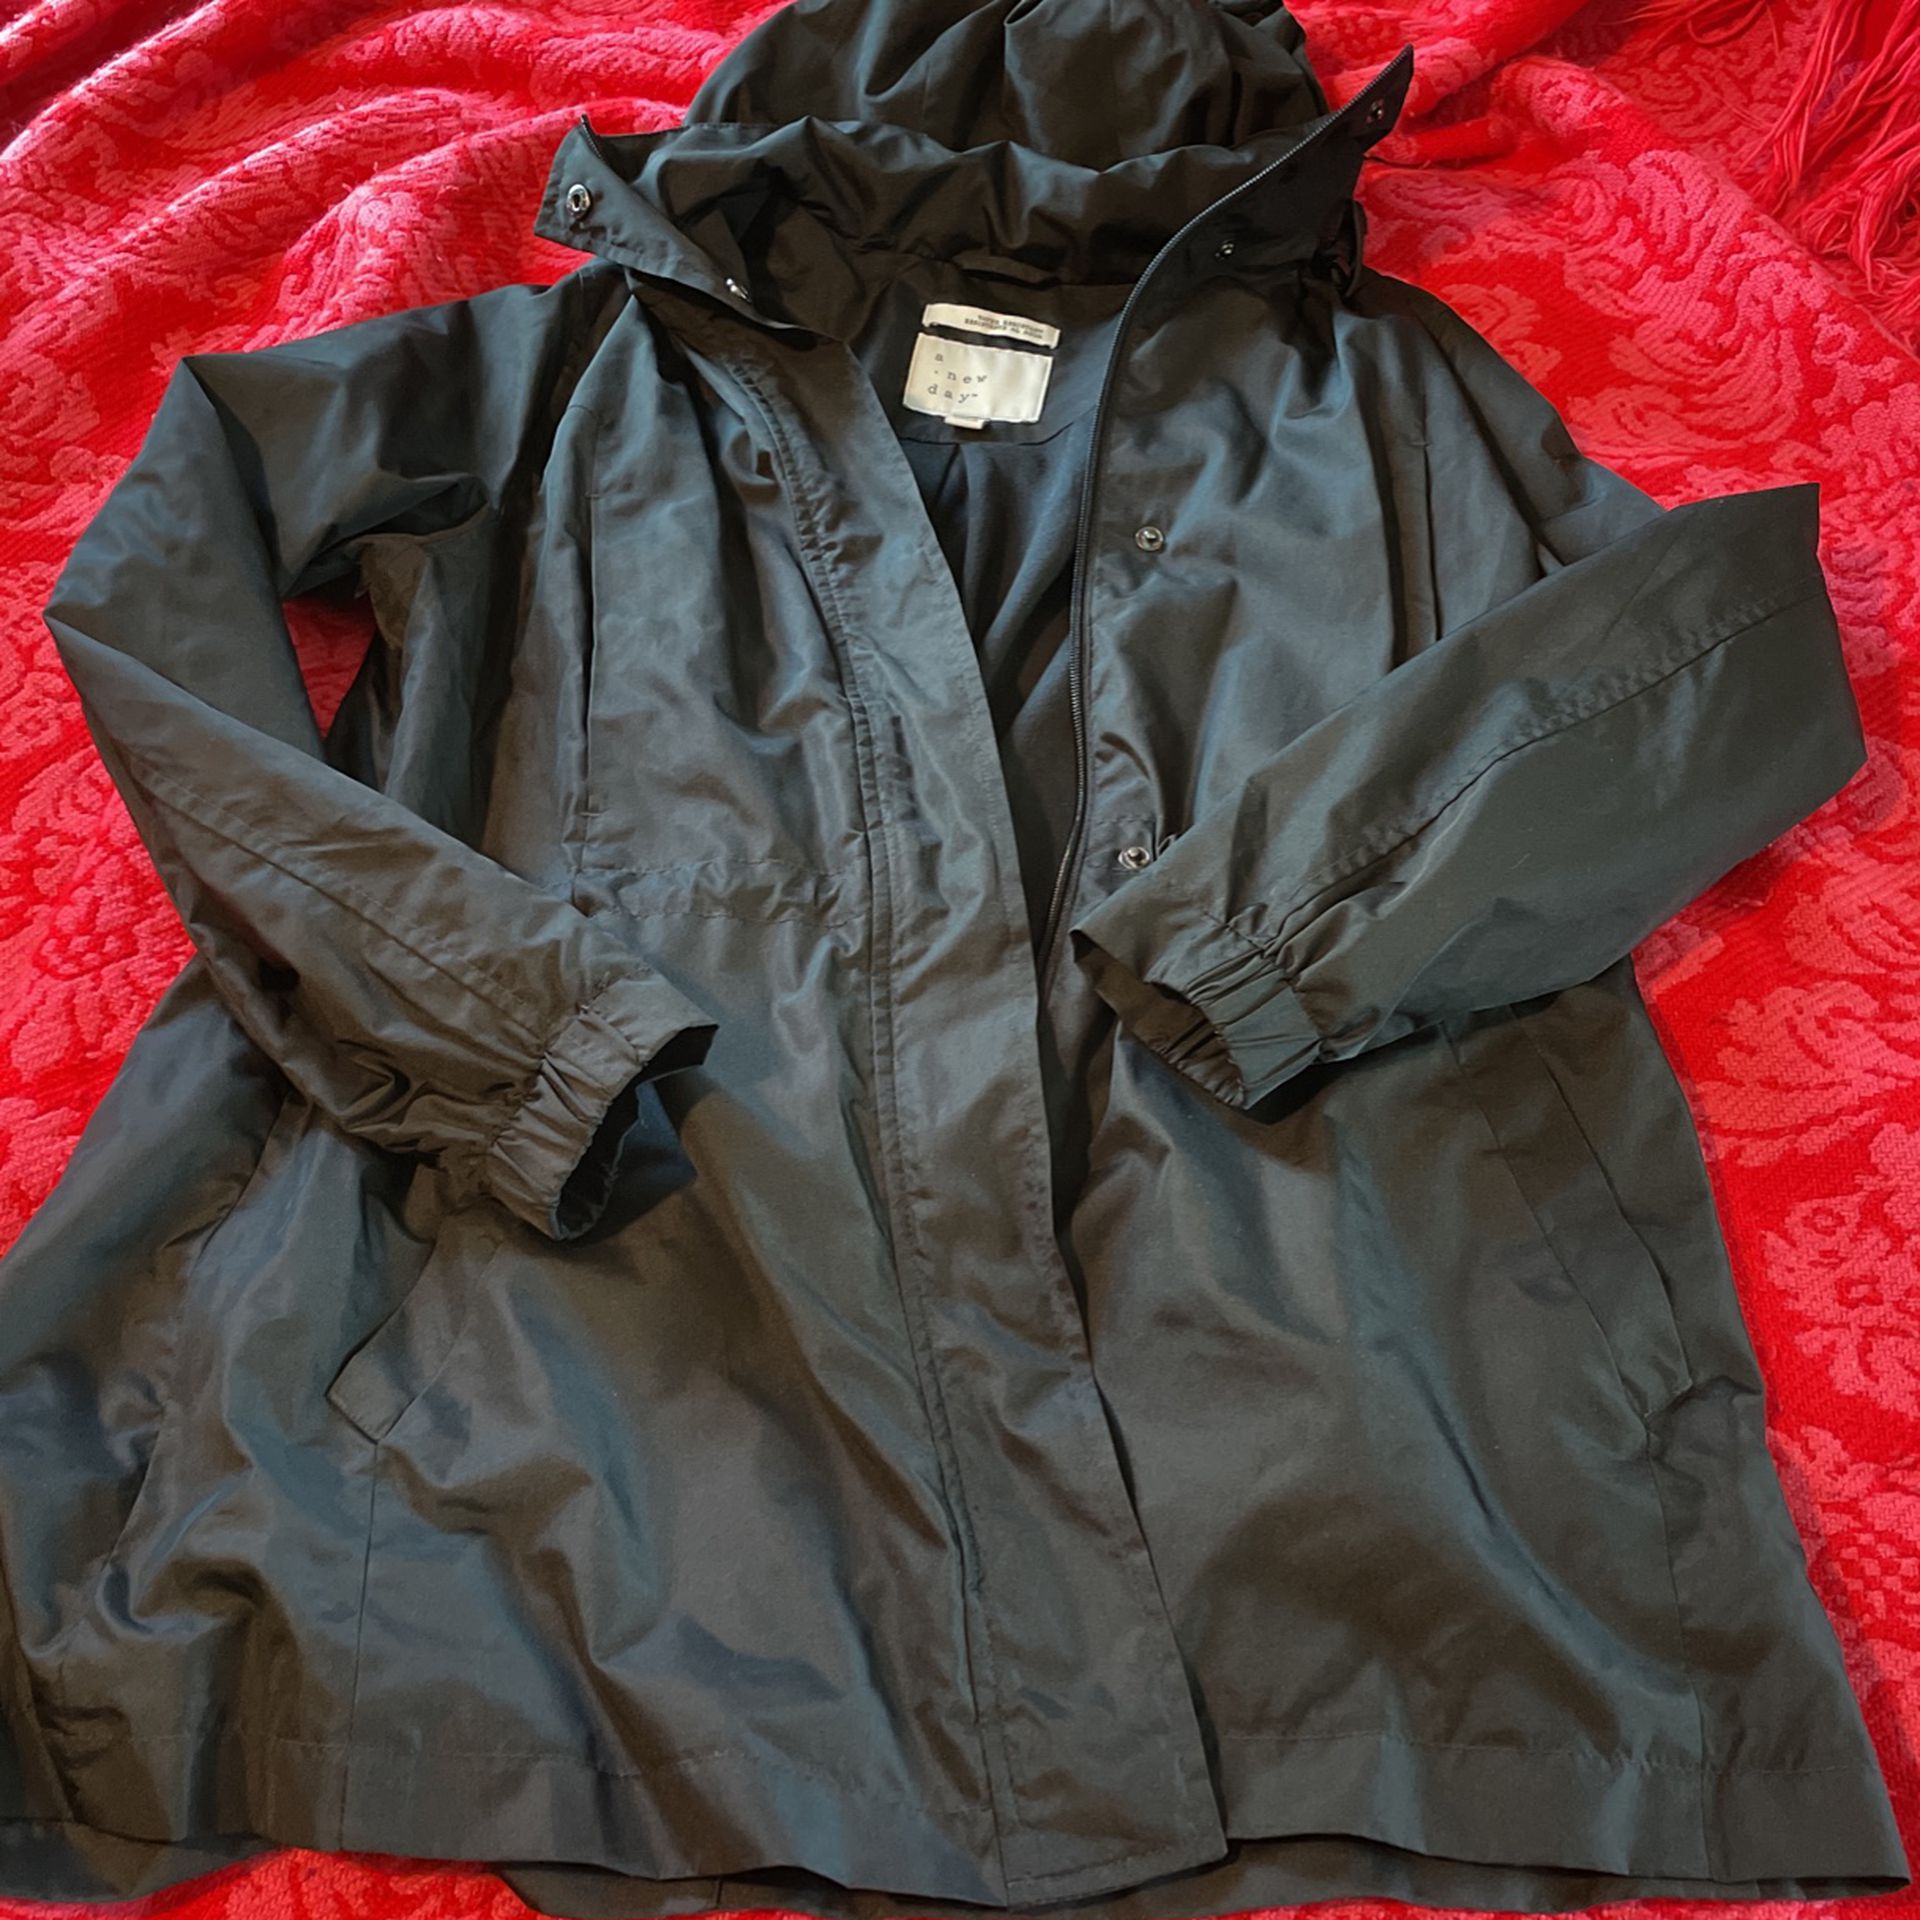 Black Rain Jacket